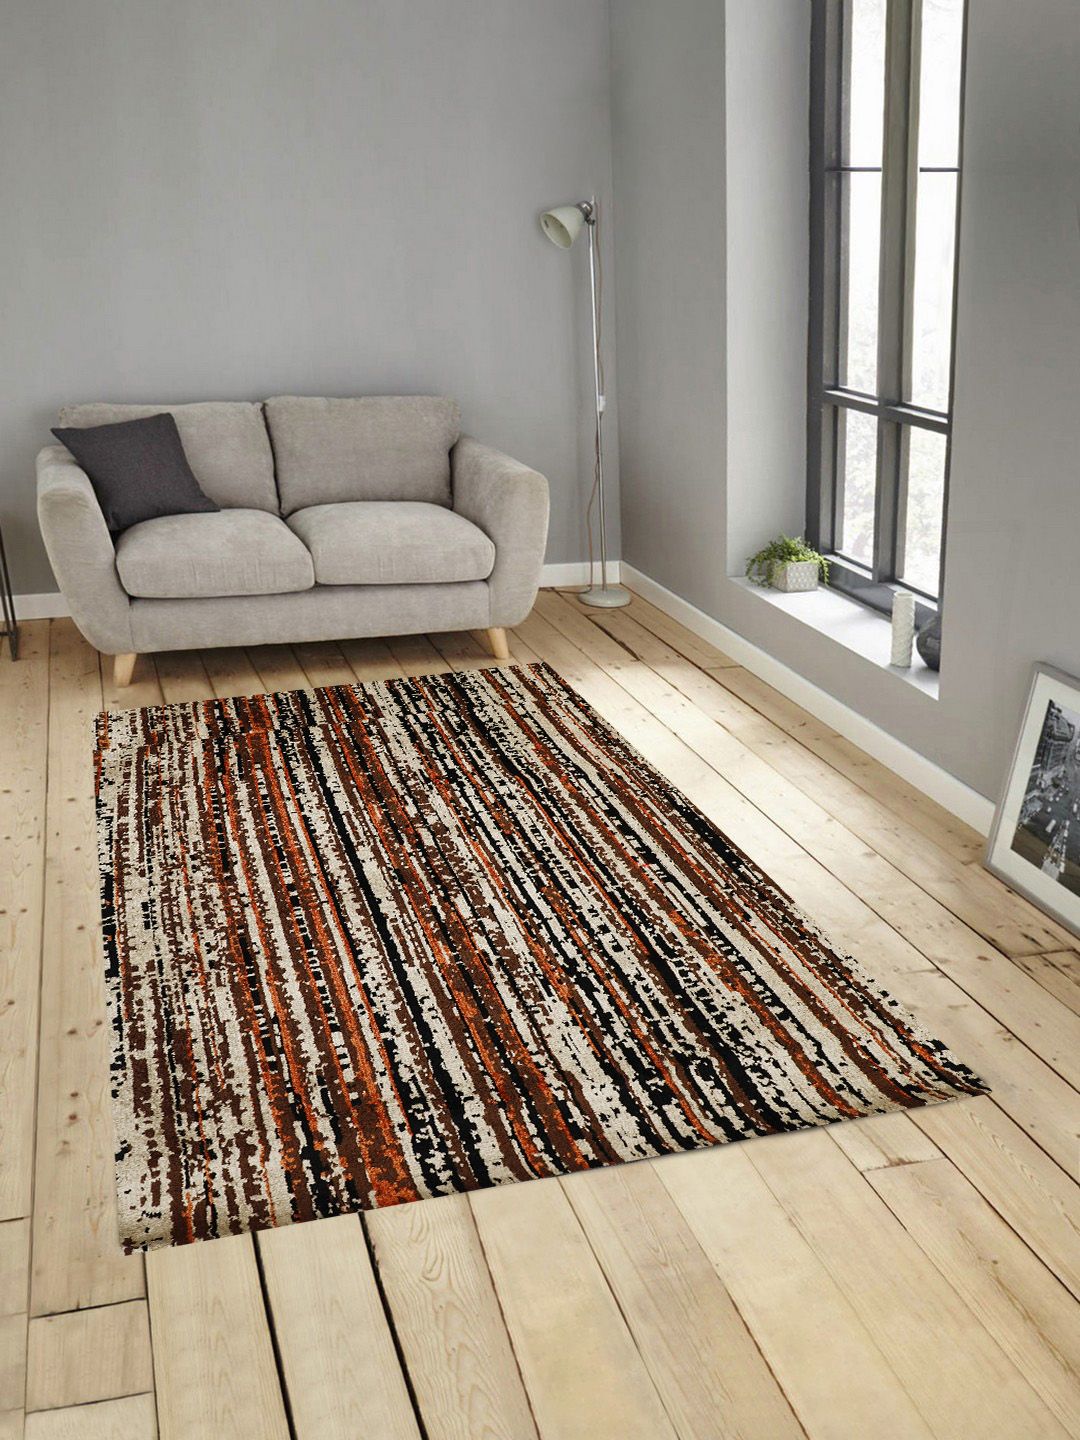 PRESTO Brown & Black Striped Anti-Skid Carpet Price in India